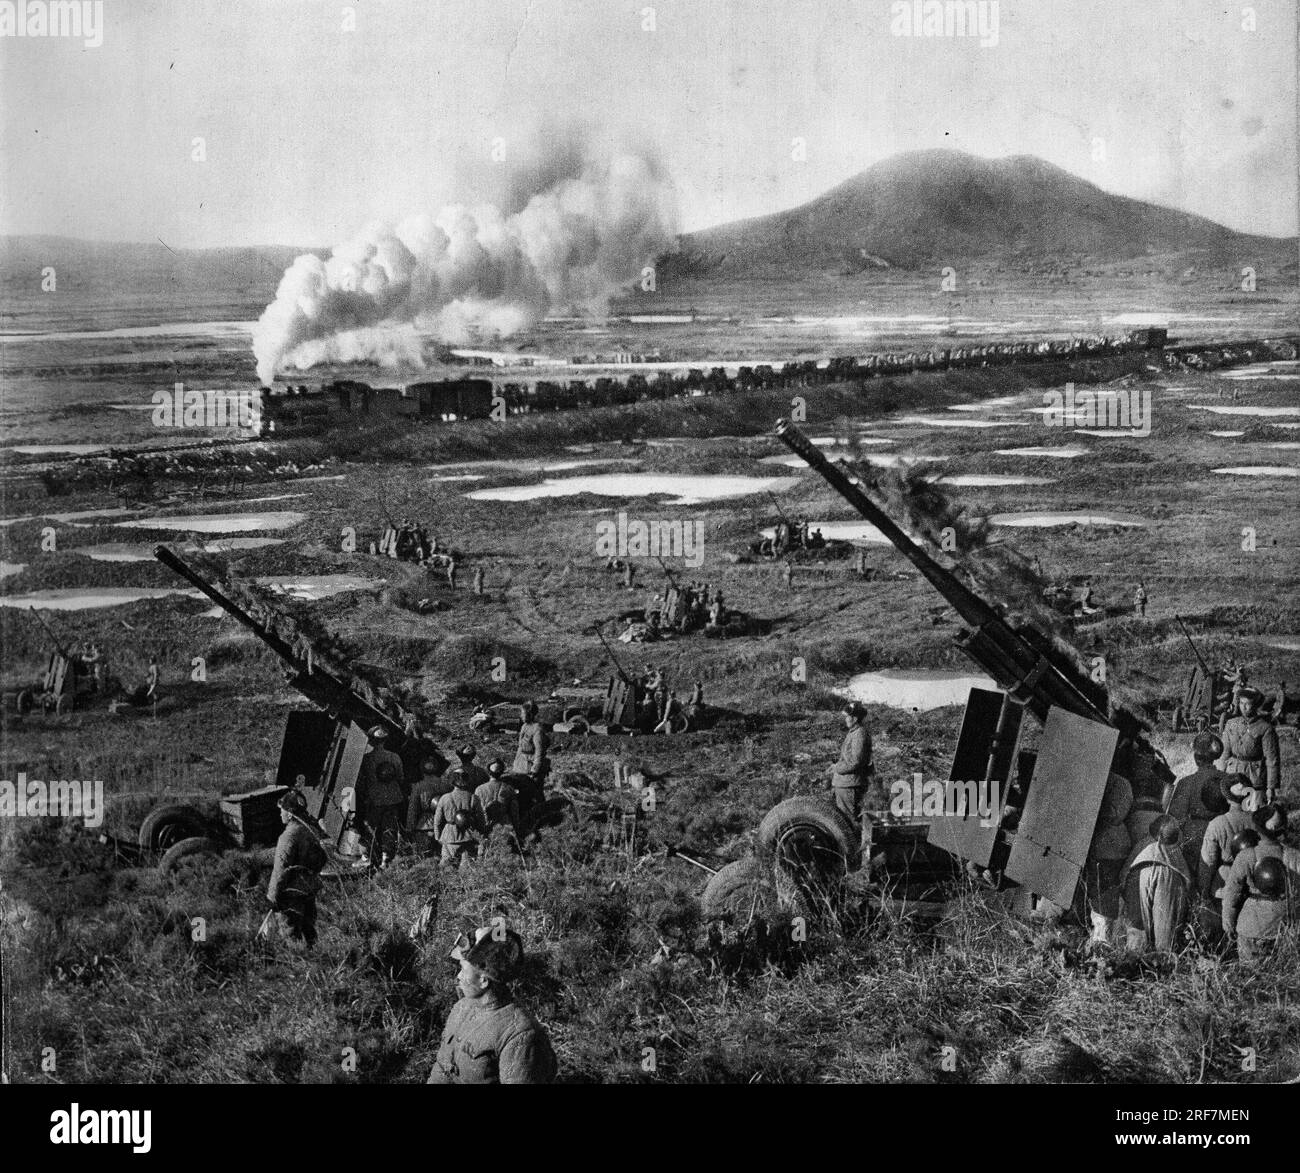 La Guerre de Coree (1950-1953), le train est use pour ravitailler les champs de bataille. In 'la Guerre de Coree', Chine, 1959. Coll. Selva. Banque D'Images